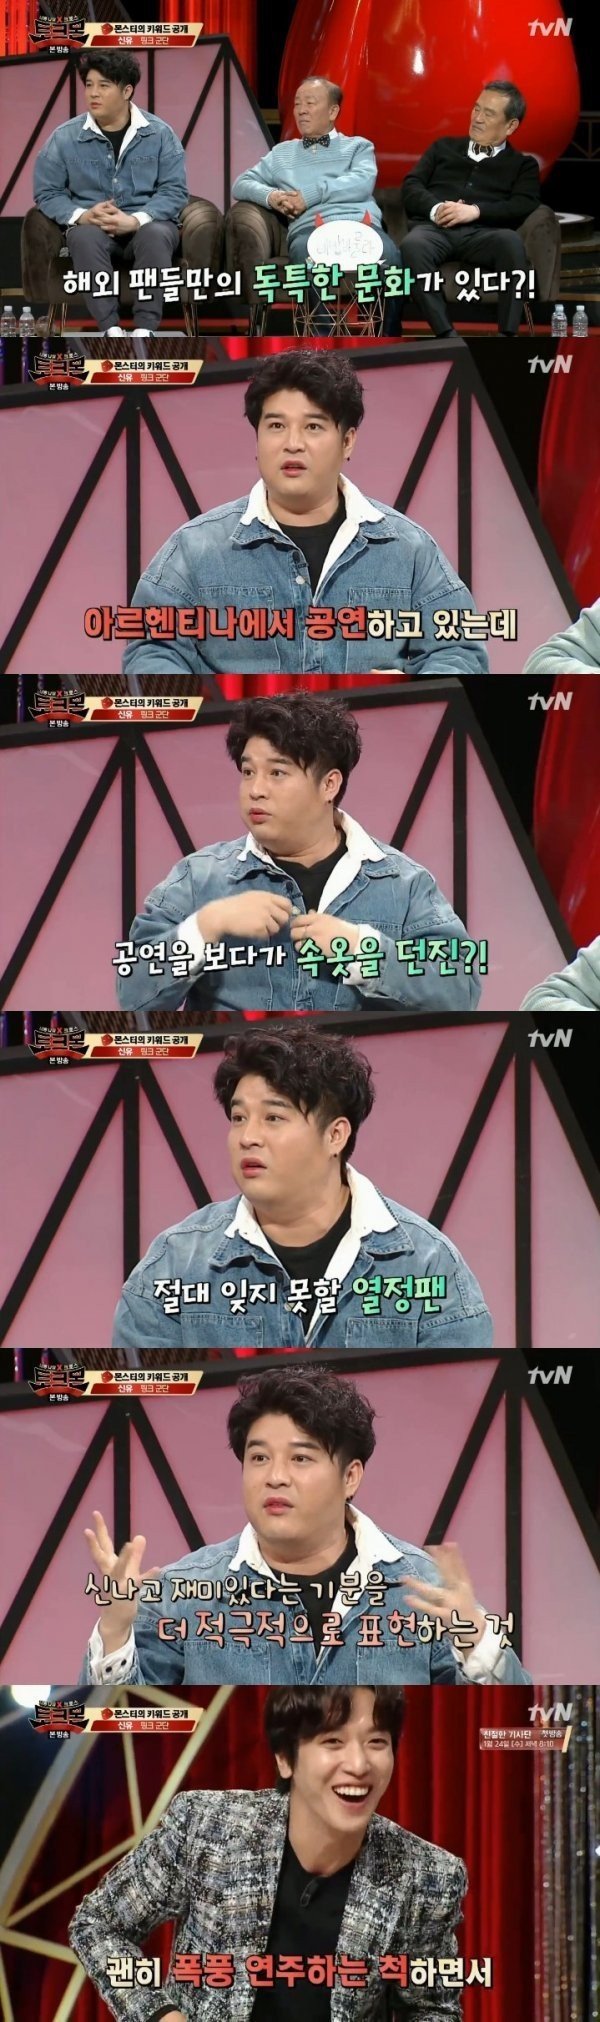 Шиндон из Super Junior рассказал о том, как поклонница бросила на сцену нижнее белье во время выступления группы